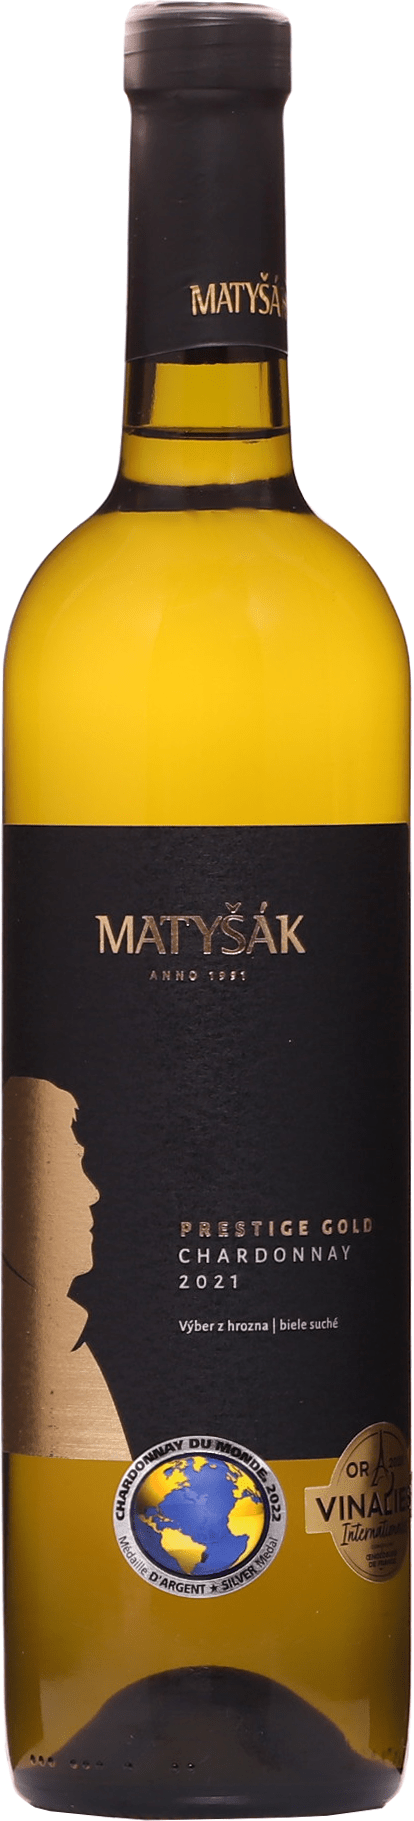 Matyšák Prestige Gold Chardonnay 2021 12,5% 0,75l (čistá fľaša)